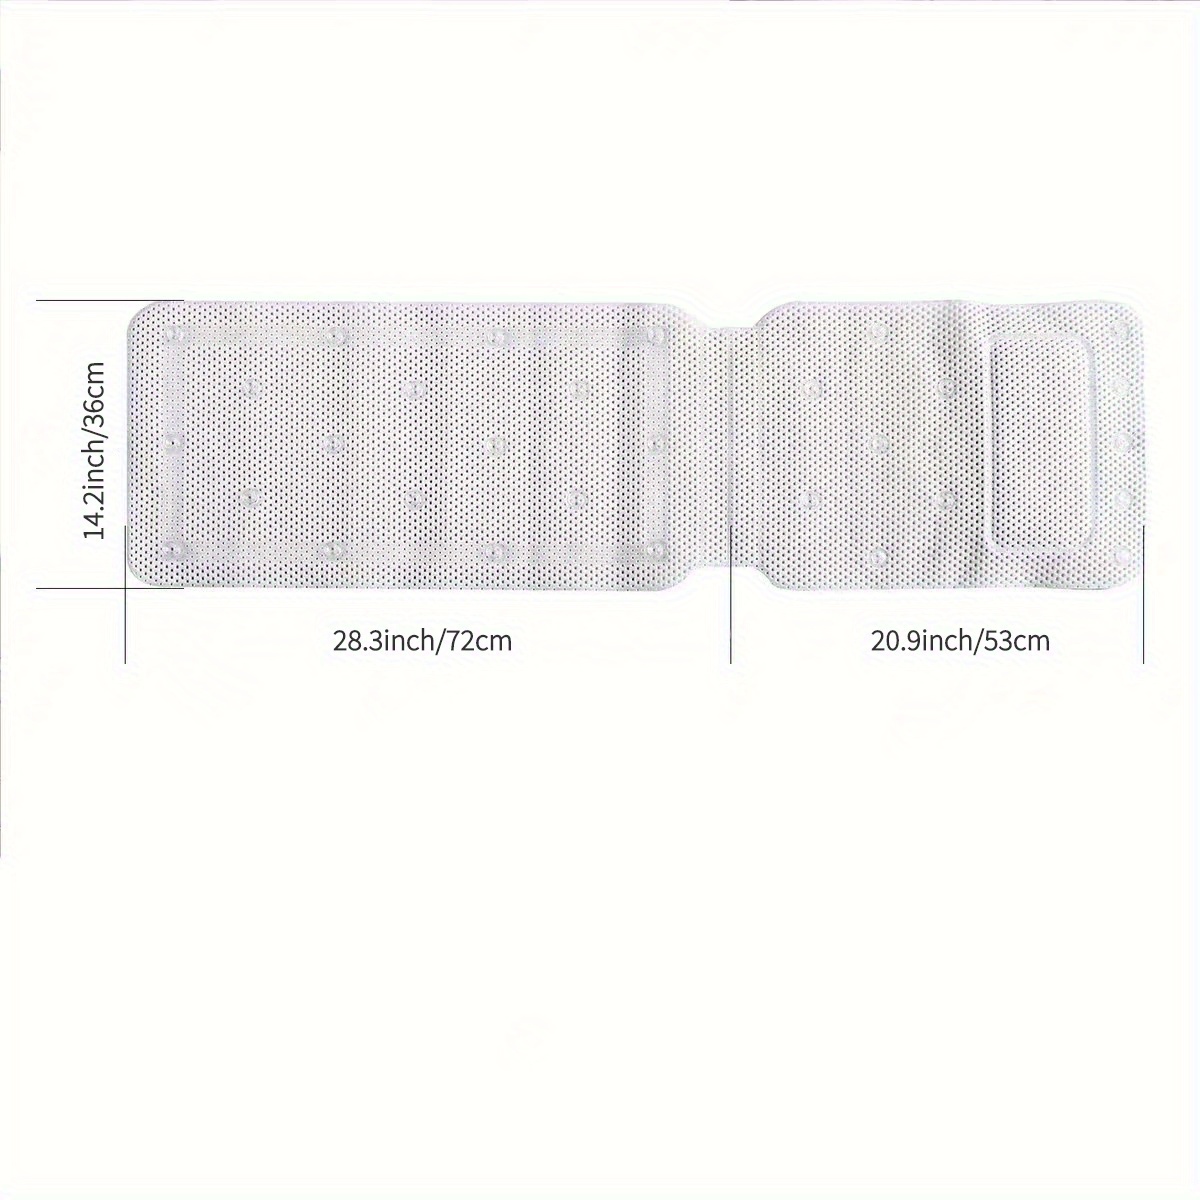 1pc Simple White Bath Pillow, Anti-slip PVC Waterproof Bath Tub Mat For  Bathroom